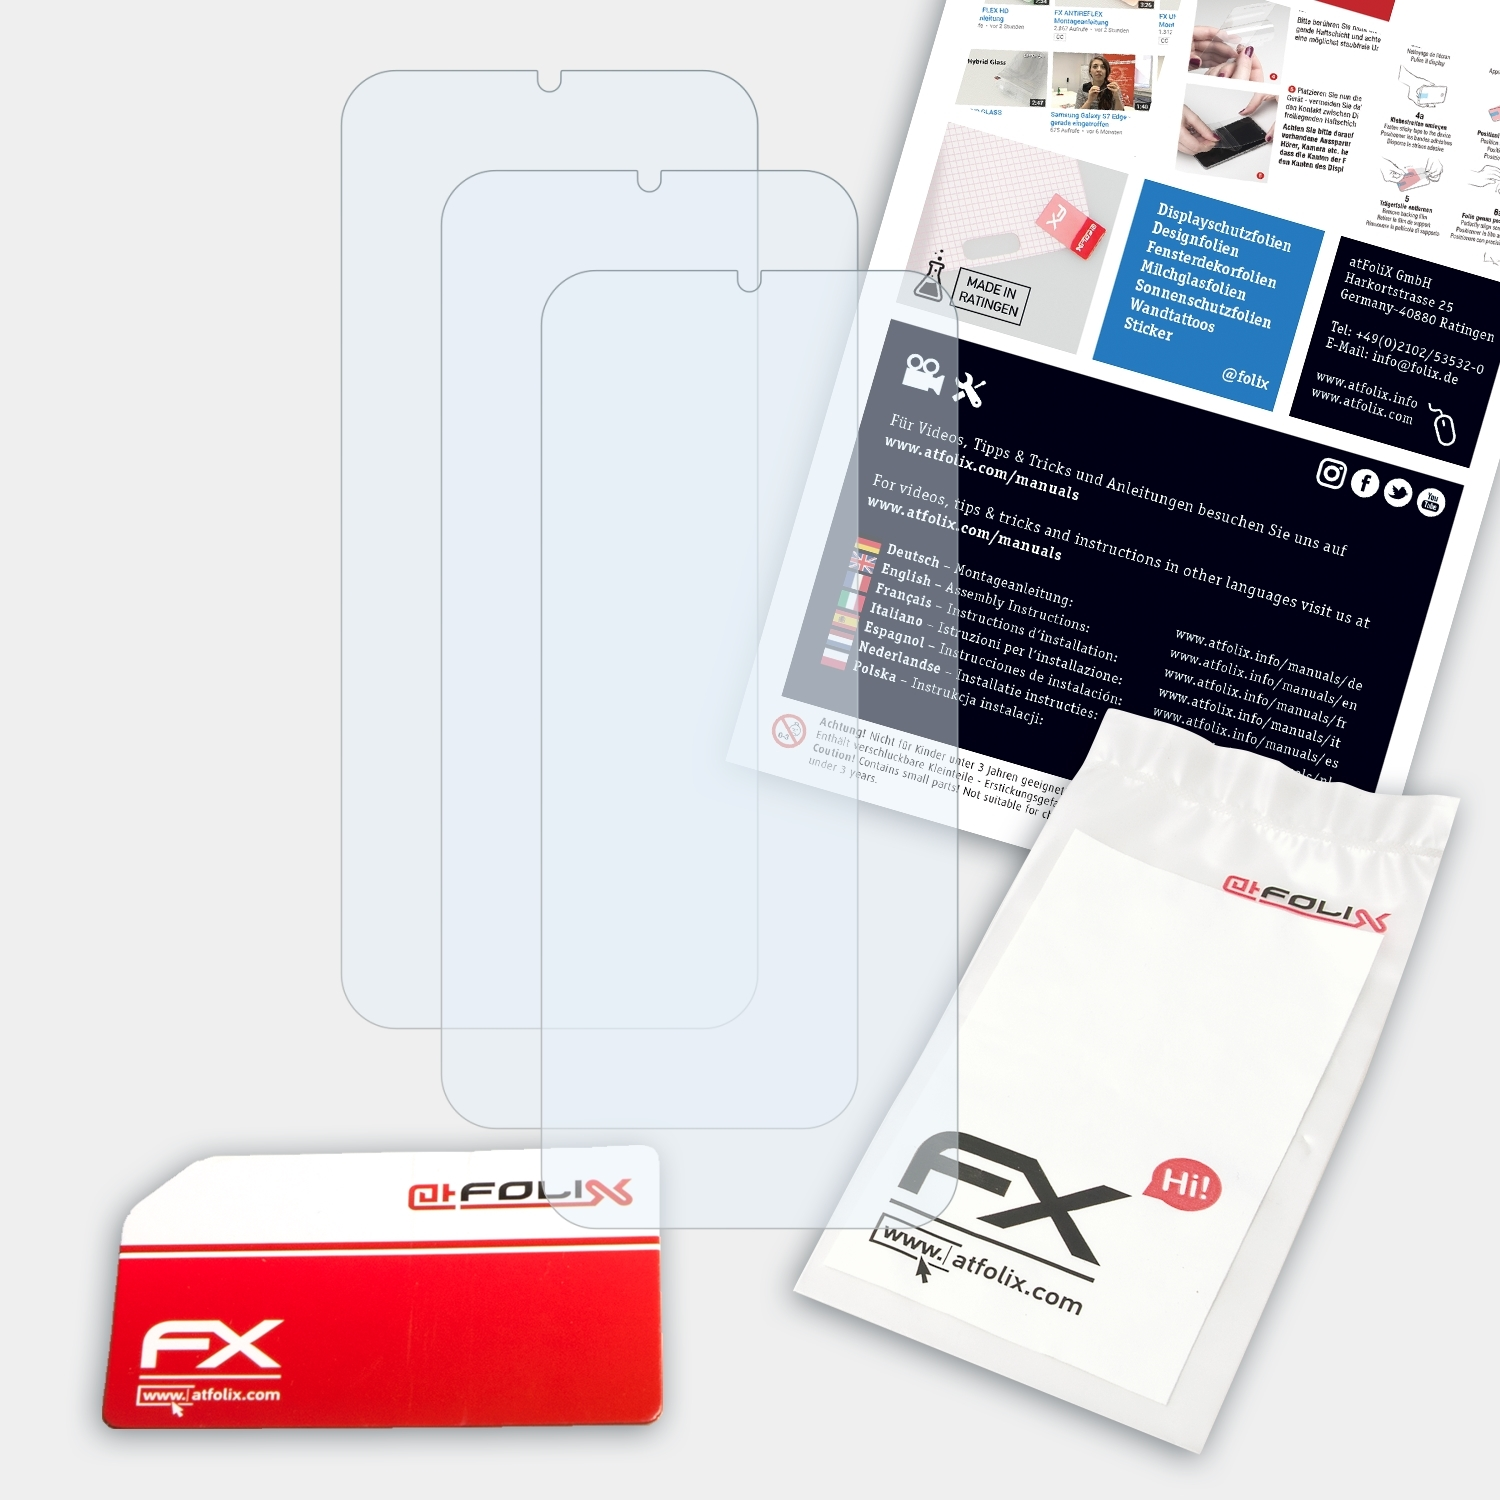 Lite) Infinix FX-Clear Displayschutz(für Hot ATFOLIX 8 3x